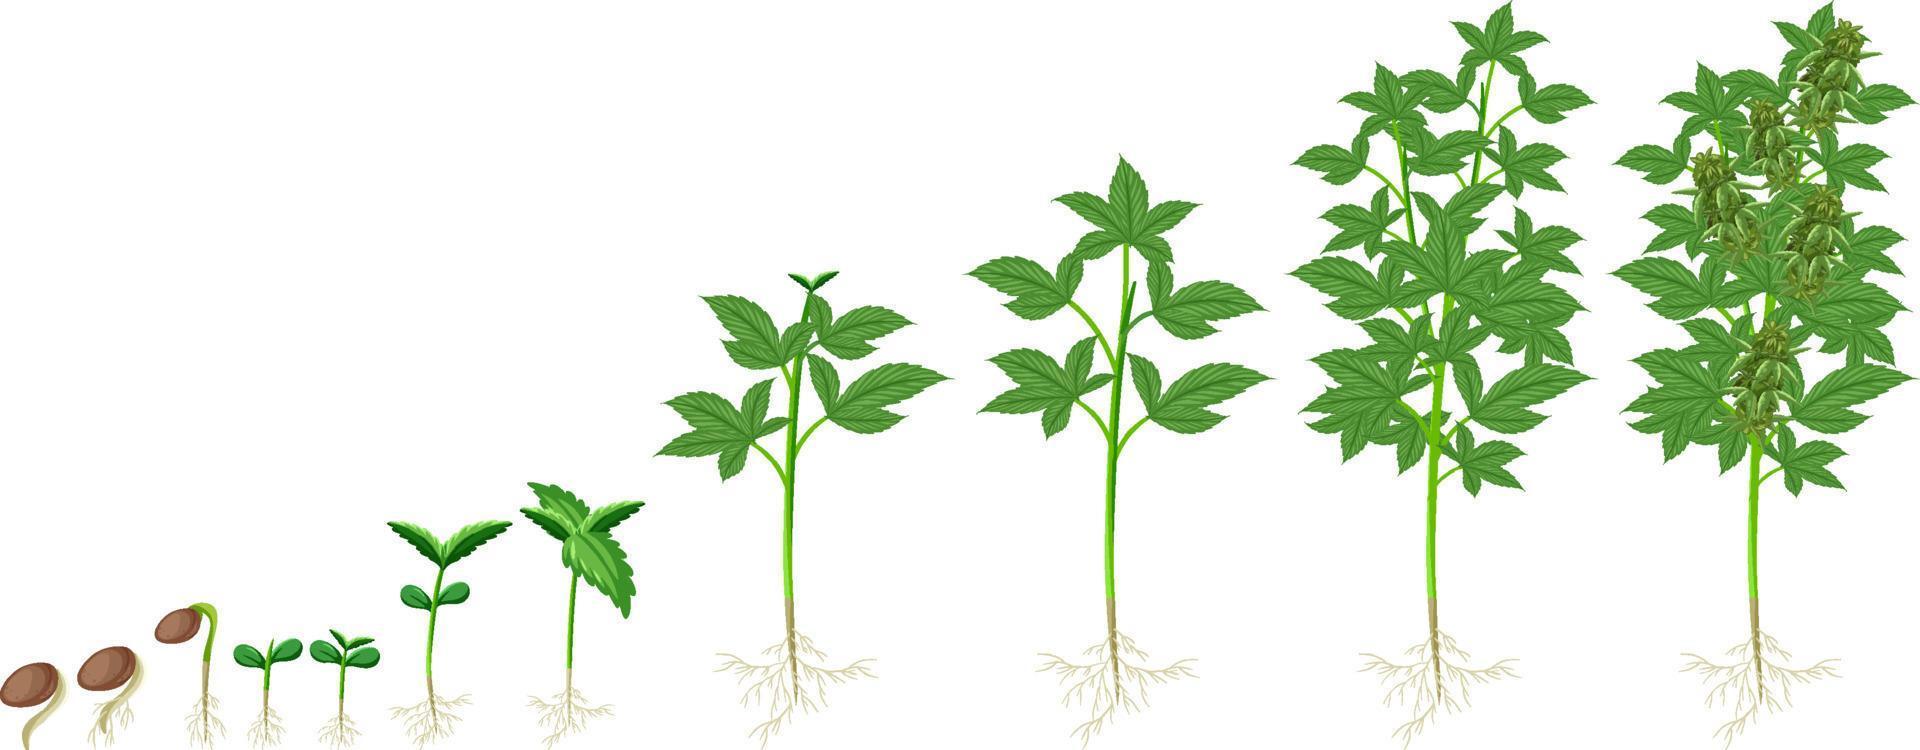 différentes étapes de la culture de la plante de cannabis vecteur